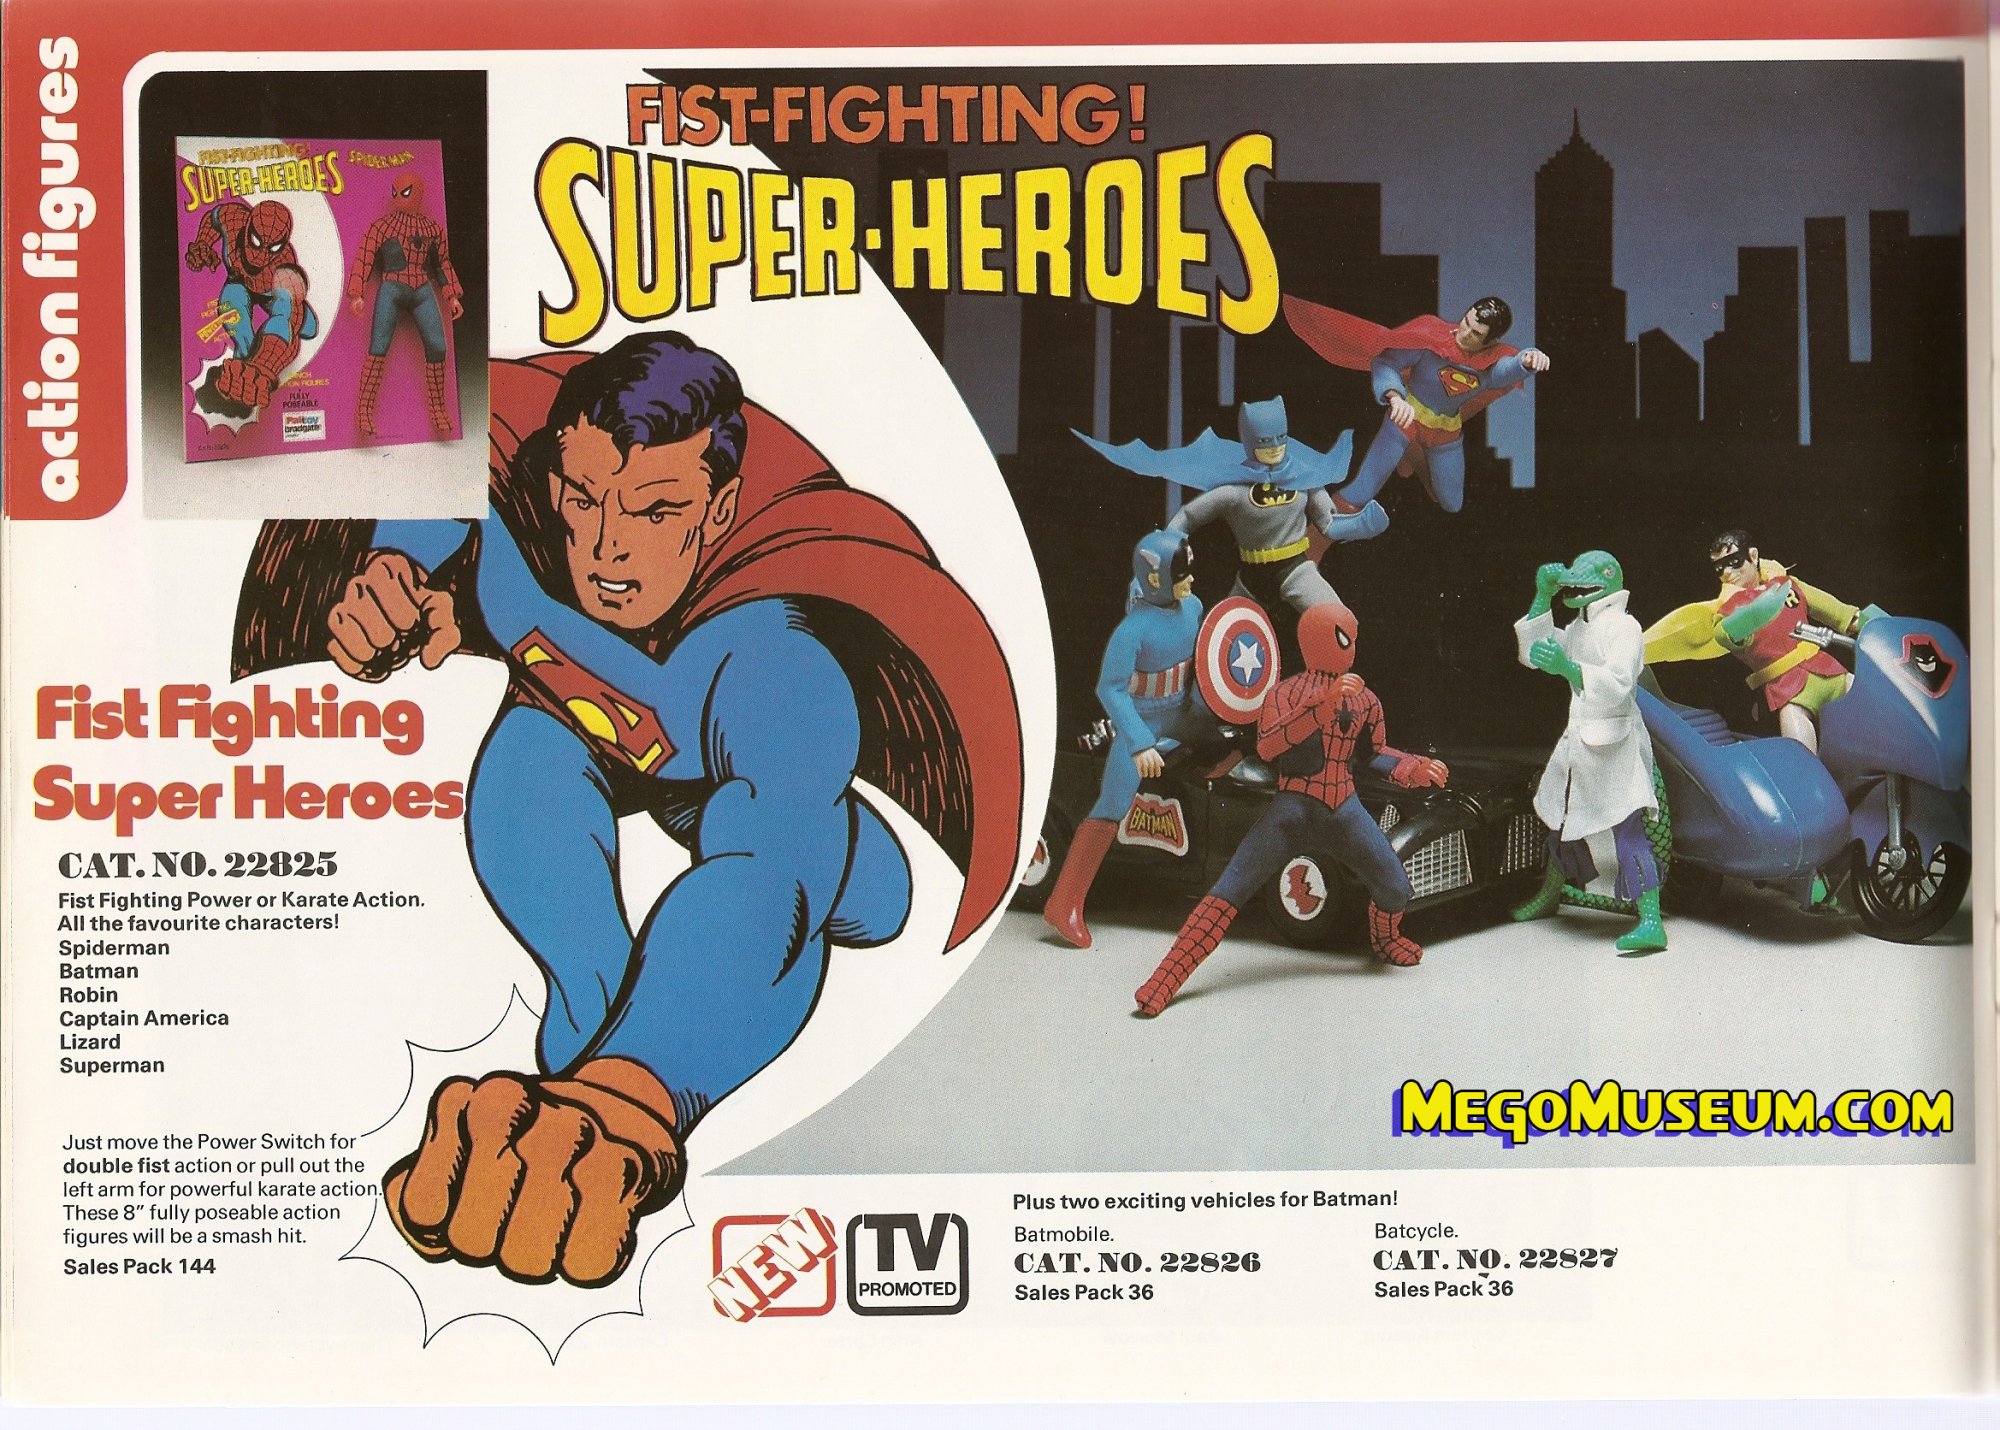 U Pick 1975 1979 Mego DC фигурки Бэтмен Супермен Робин penquin 4" свободных частей 